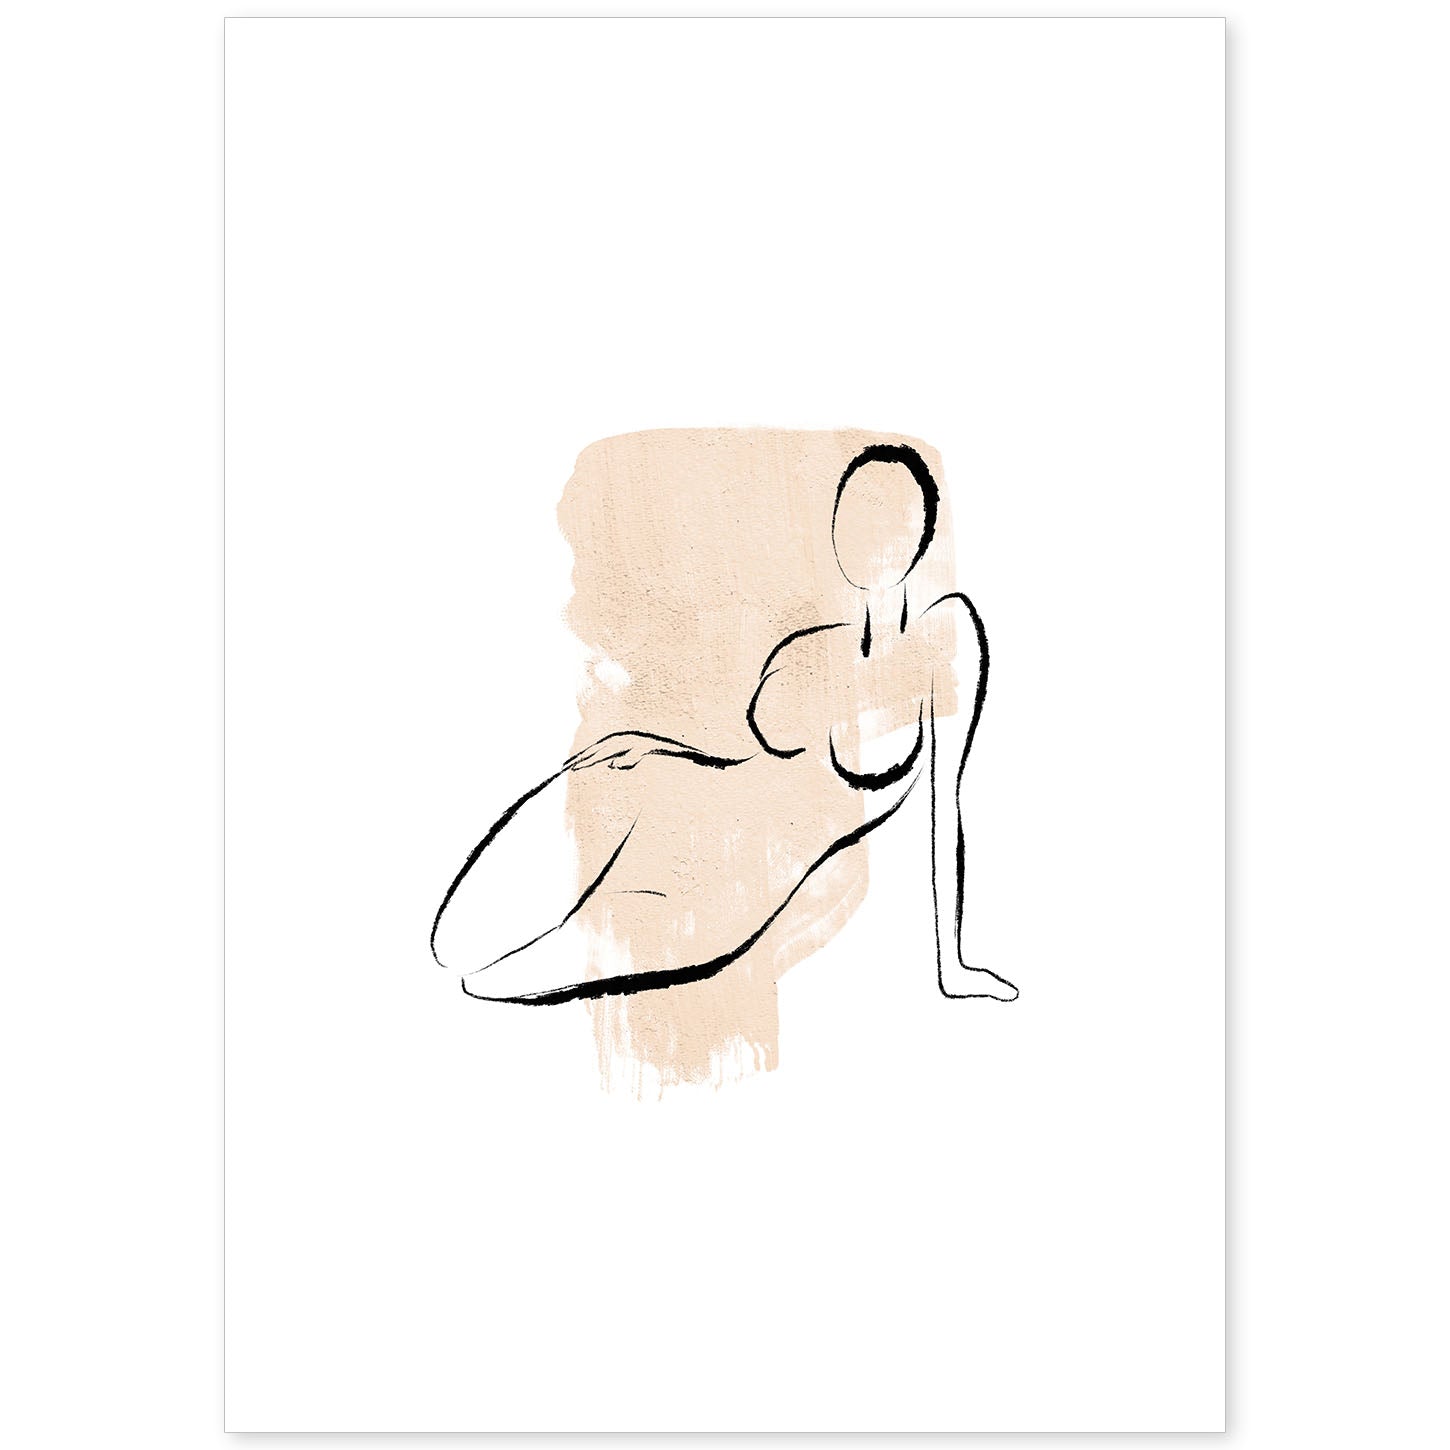 Poster con ilustracion de mujer. Dibujos con formas, caras, cuerpos y gestos de mujeres. 'Mujeres 14'.-Artwork-Nacnic-A4-Sin marco-Nacnic Estudio SL